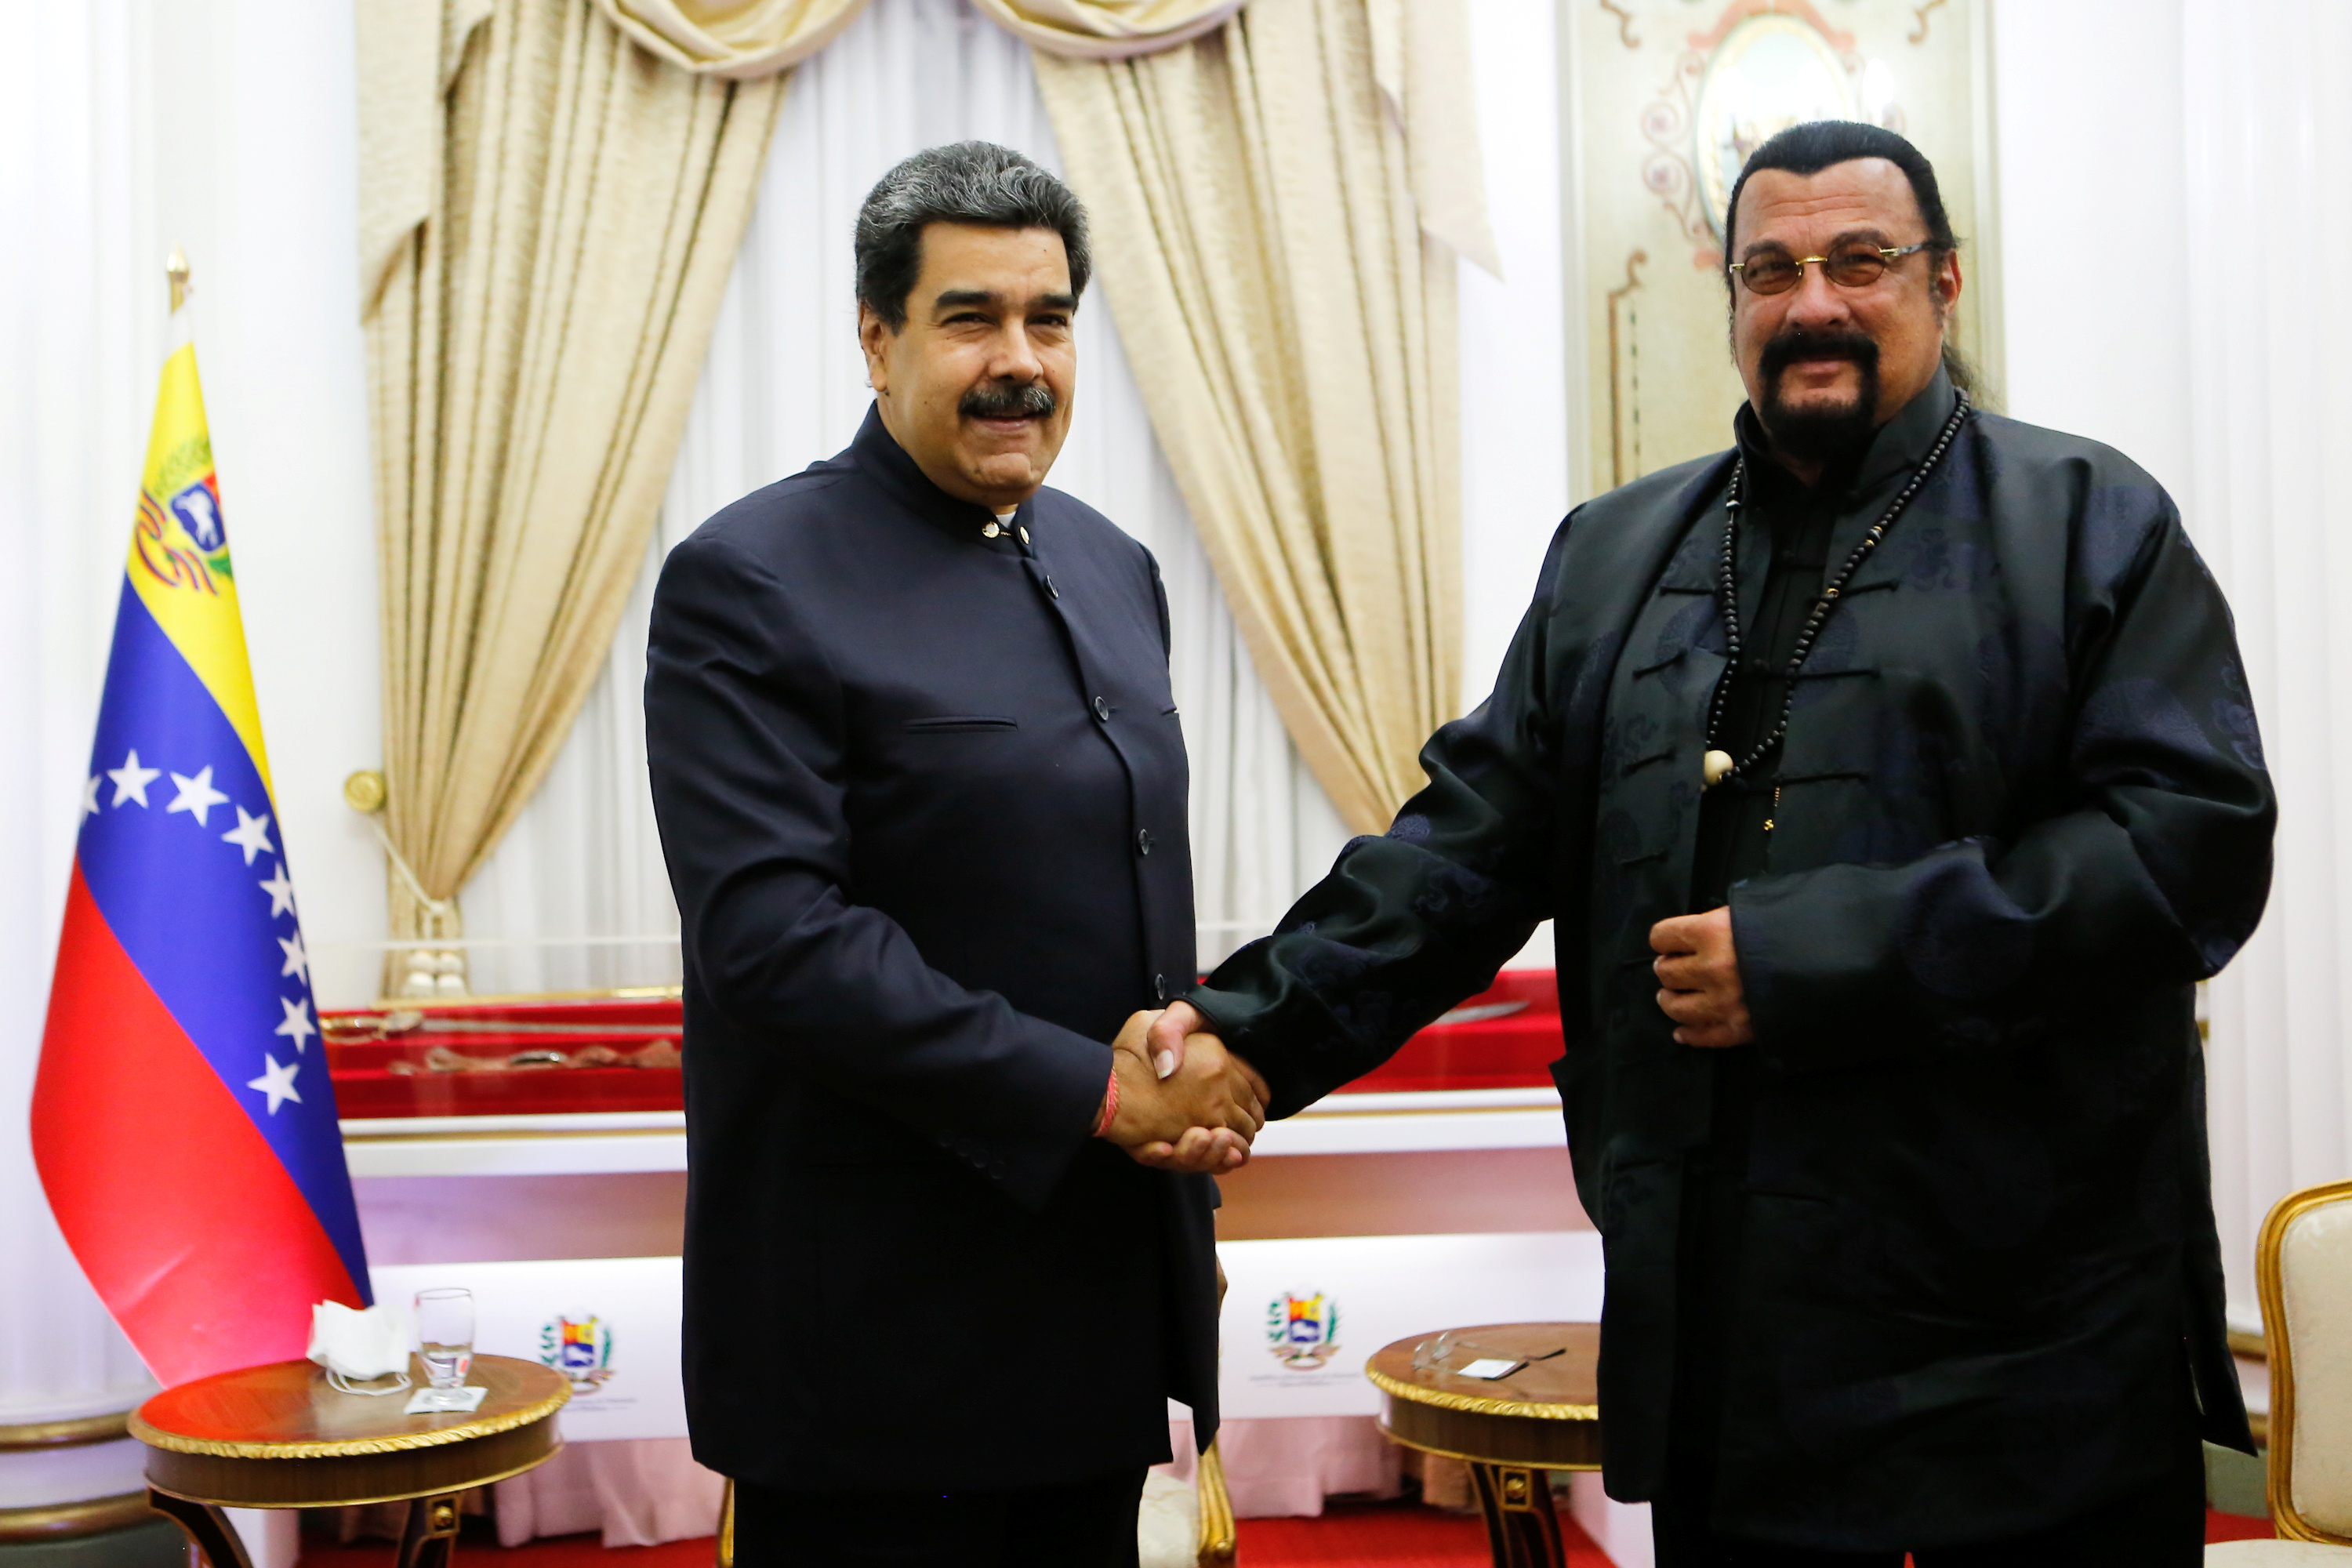 En 2021 el actor y productor estadounidense viajó a Venezuela para visitar al dictador de ese país, Nicolás Maduro y le obsequió una espada samurái durante un encuentro en el palacio de Miraflores en Caracas. (REUTERS)